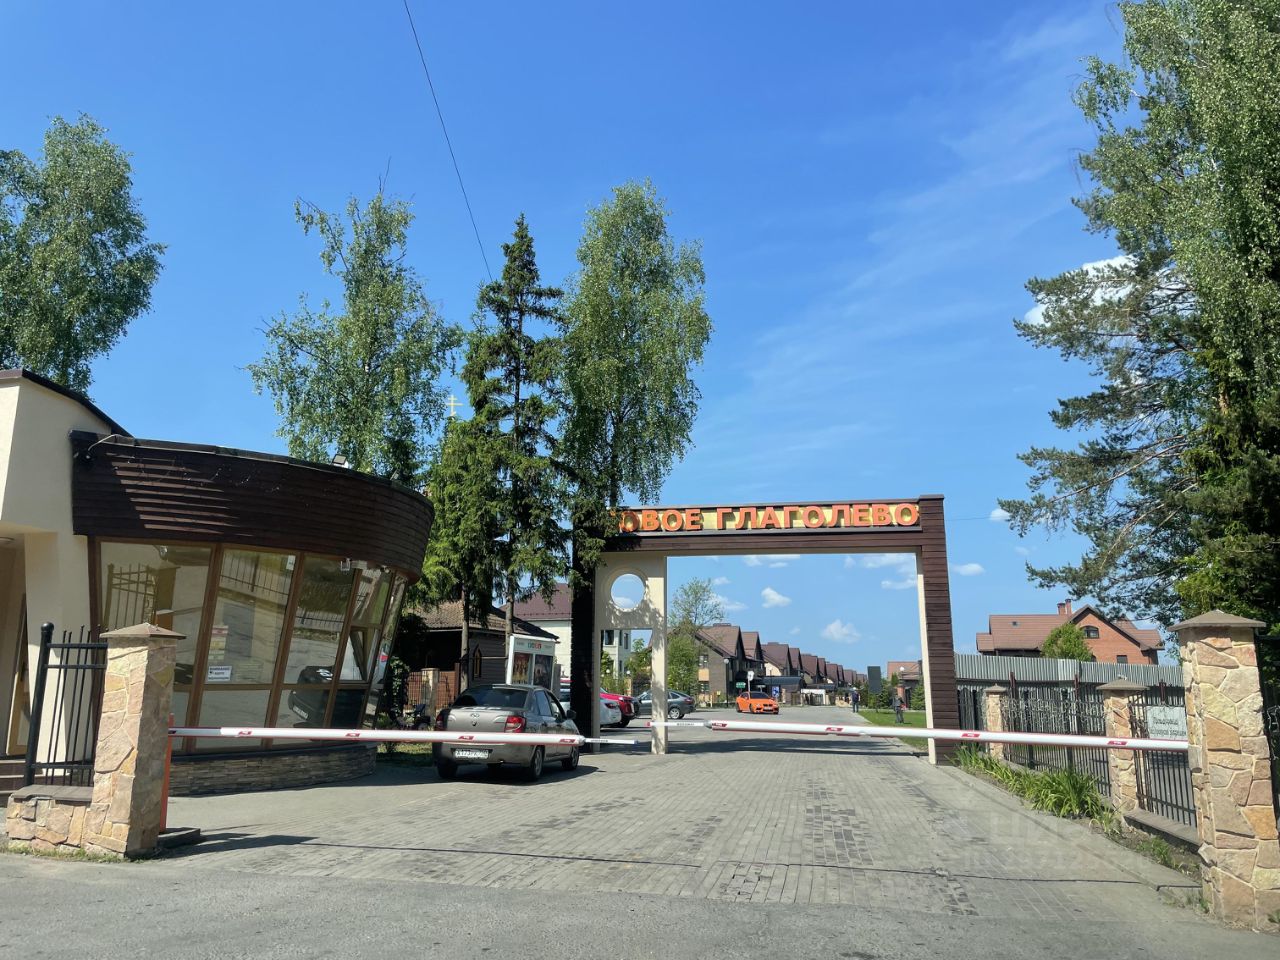 Купить земельный участок ИЖС в деревне Глаголево Московской области,  продажа участков под строительство. Найдено 5 объявлений.